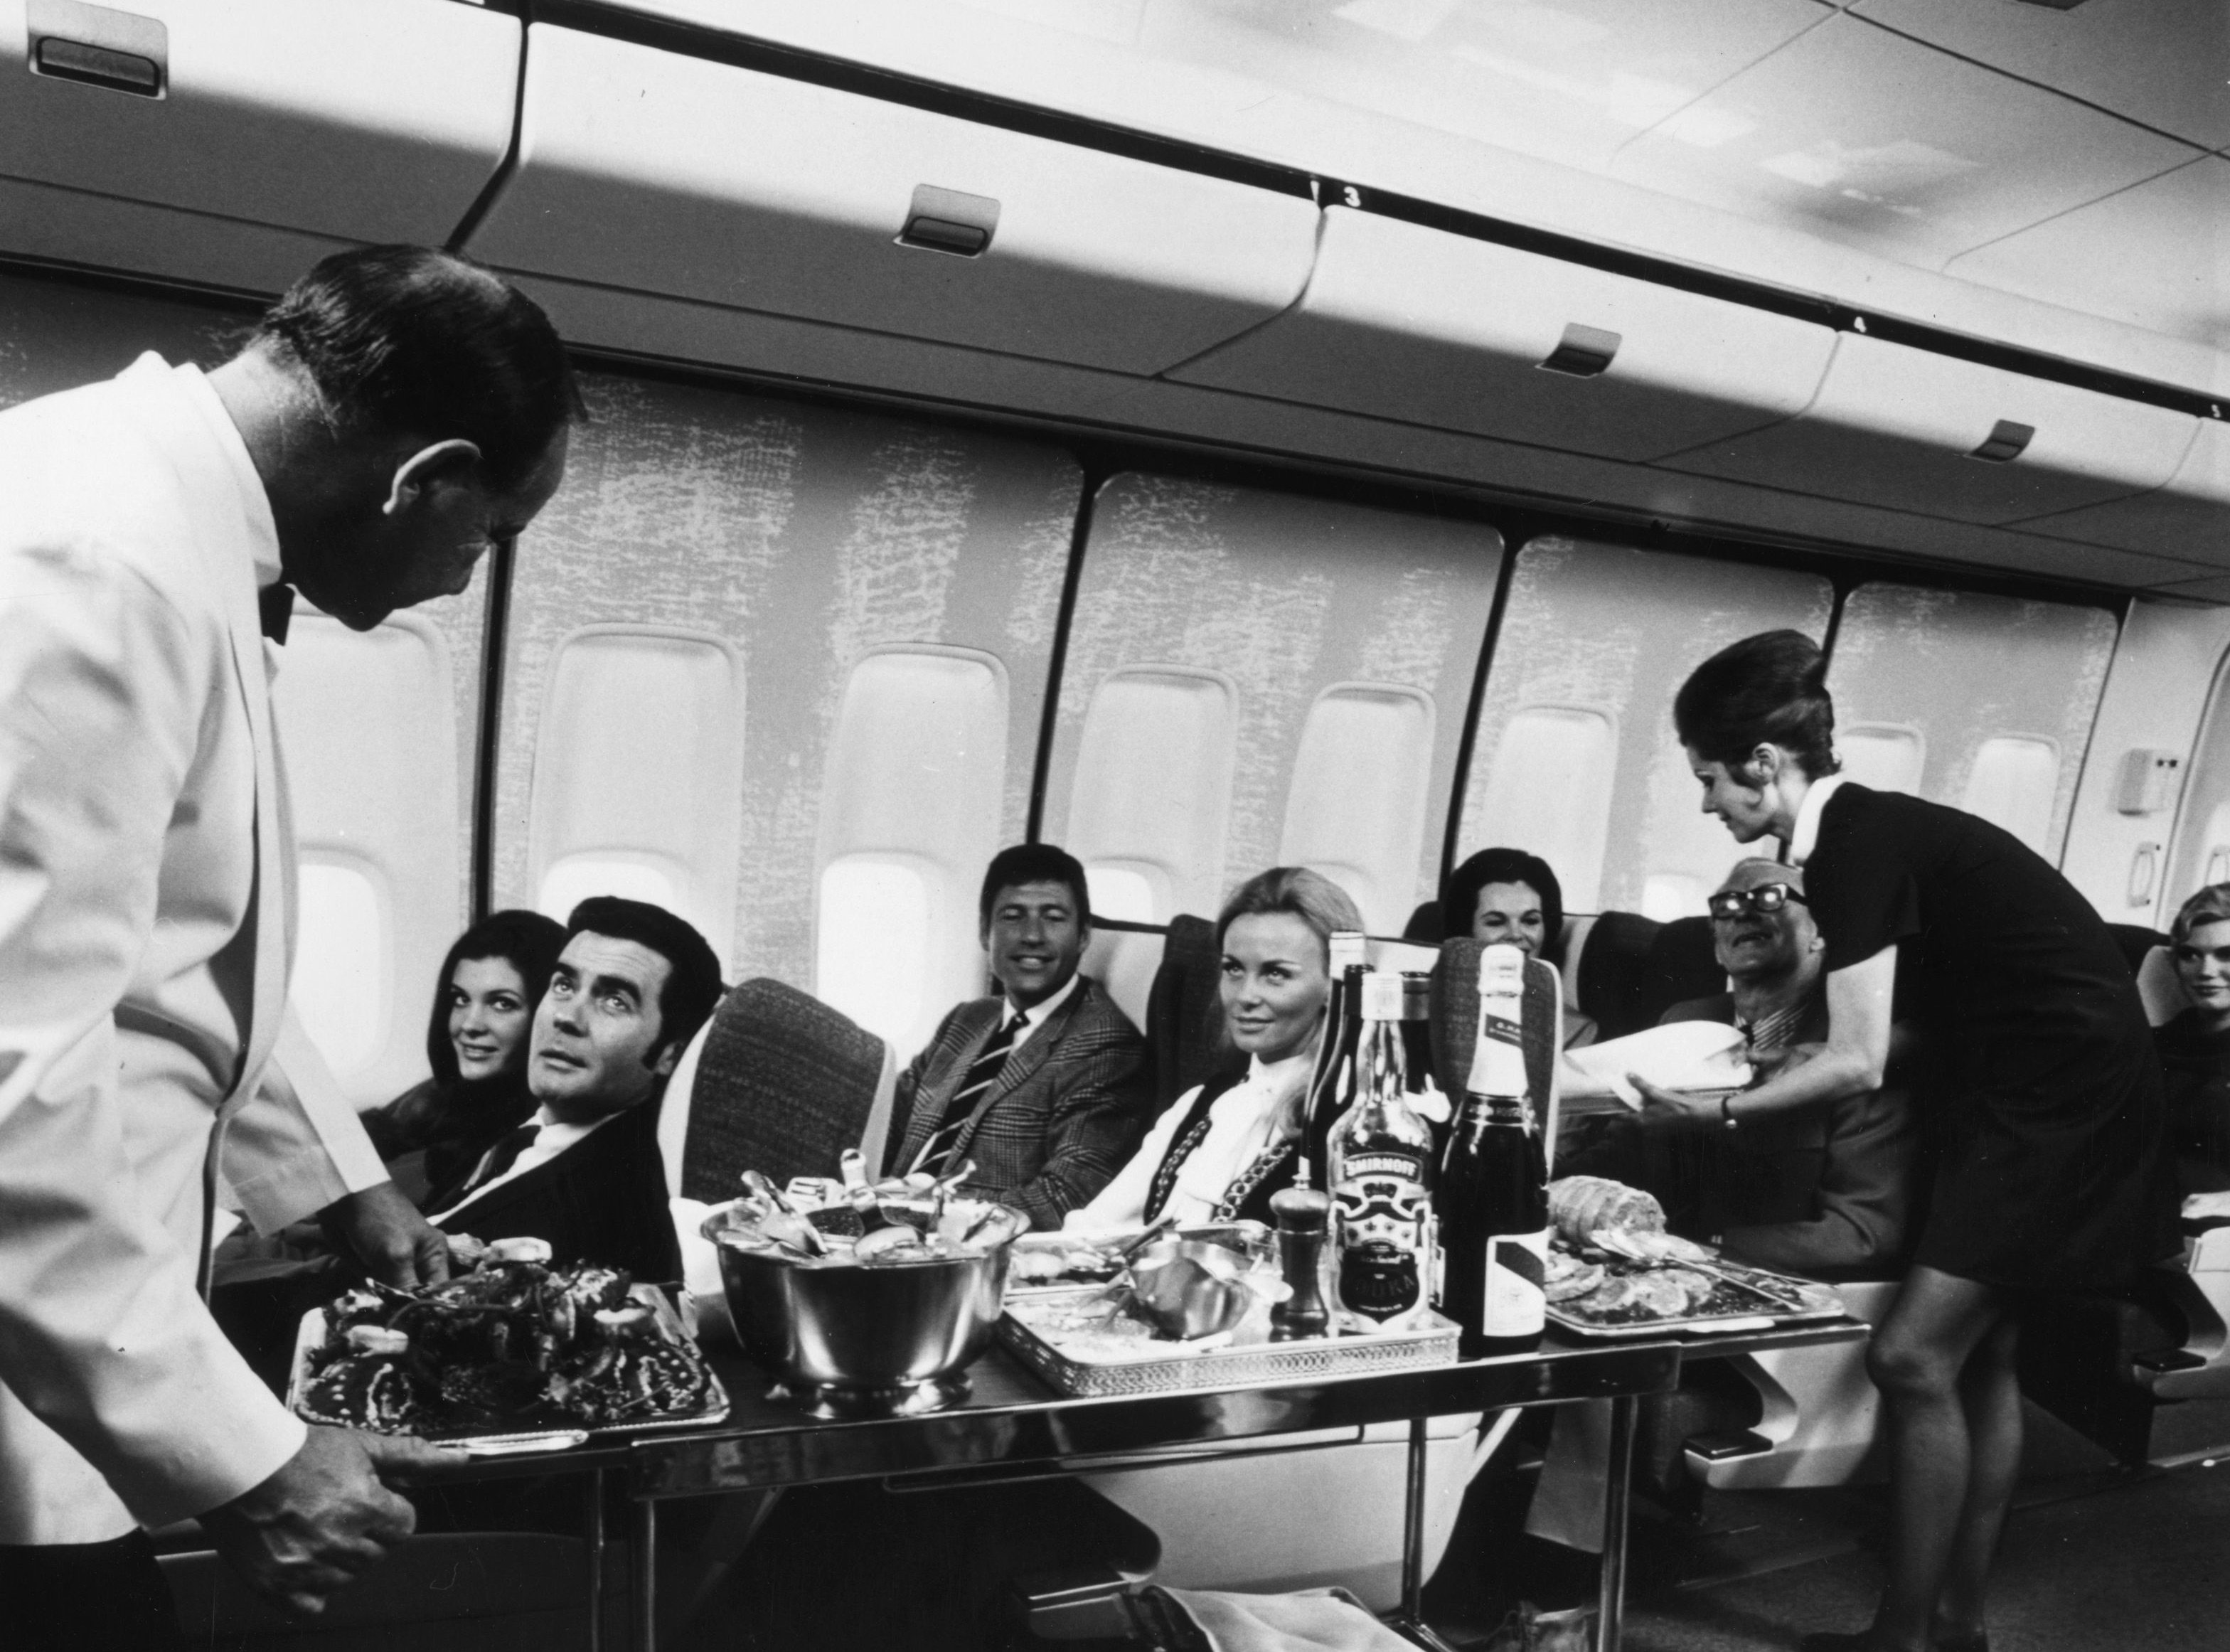 passengers flying first class